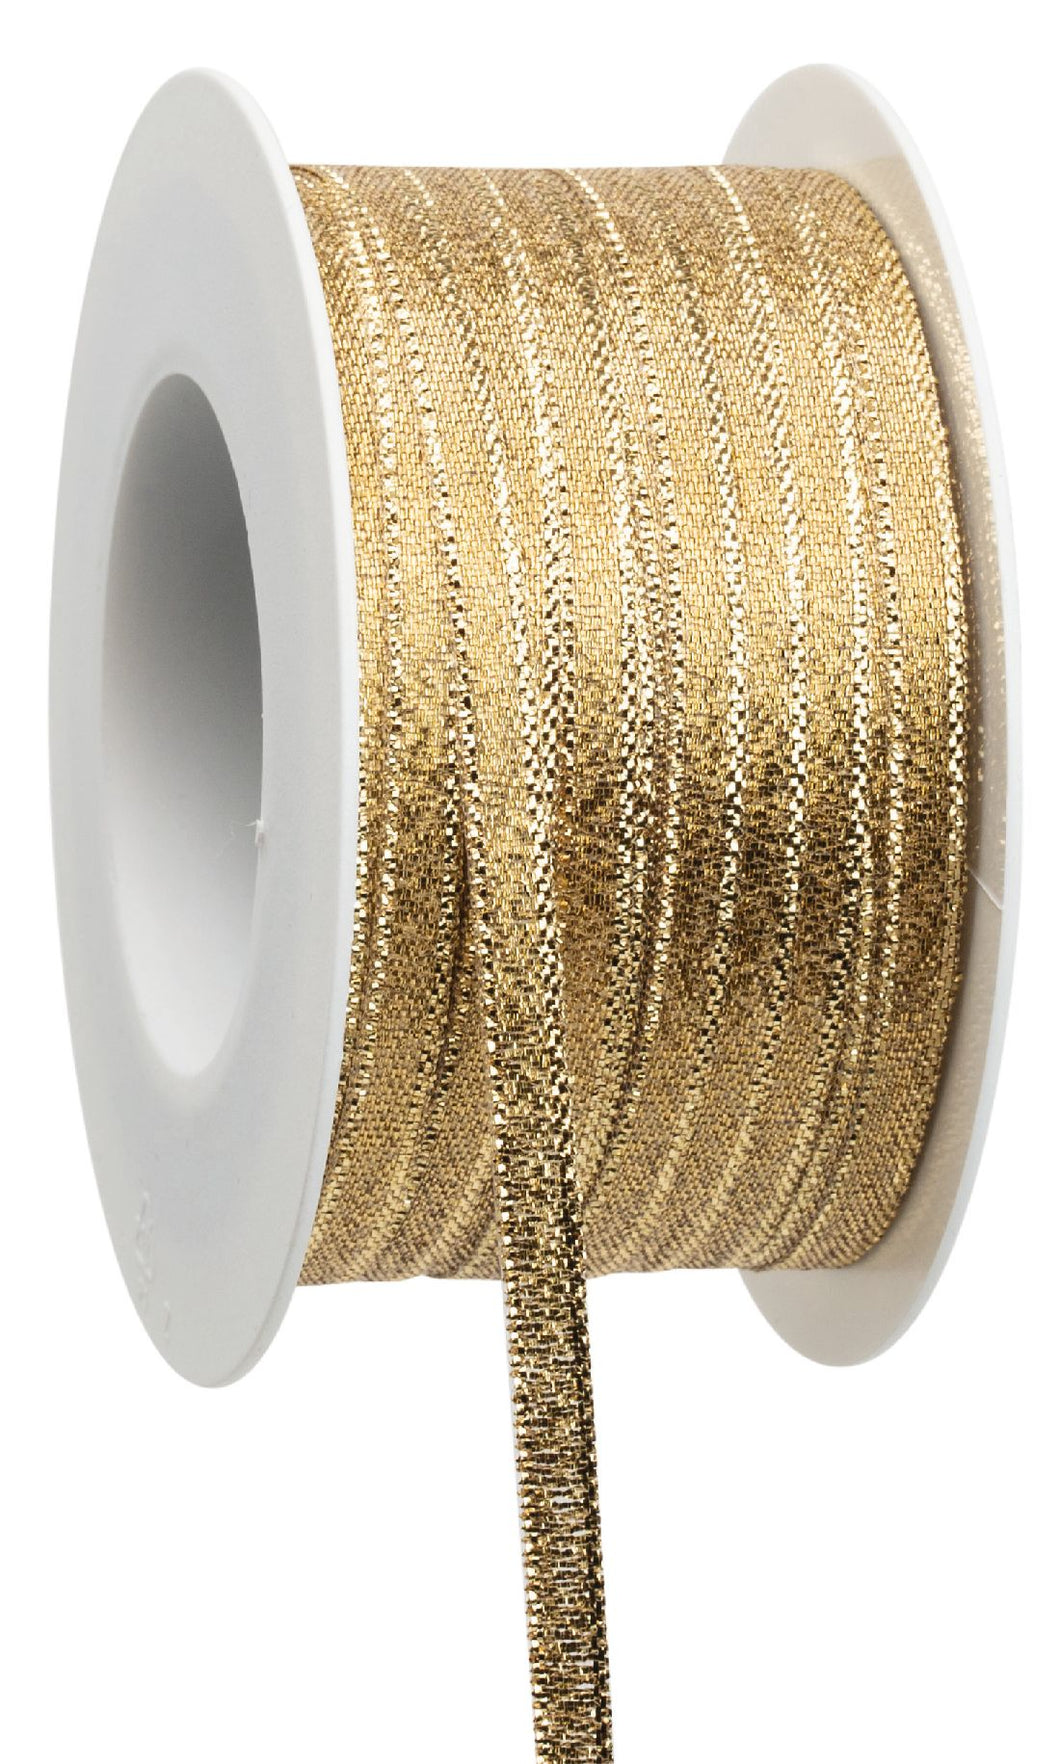 Lurex Kräuselband I gold I Breite 5 mm I Länge 50 Meter I Geschenkband - 0,36 € pro Meter